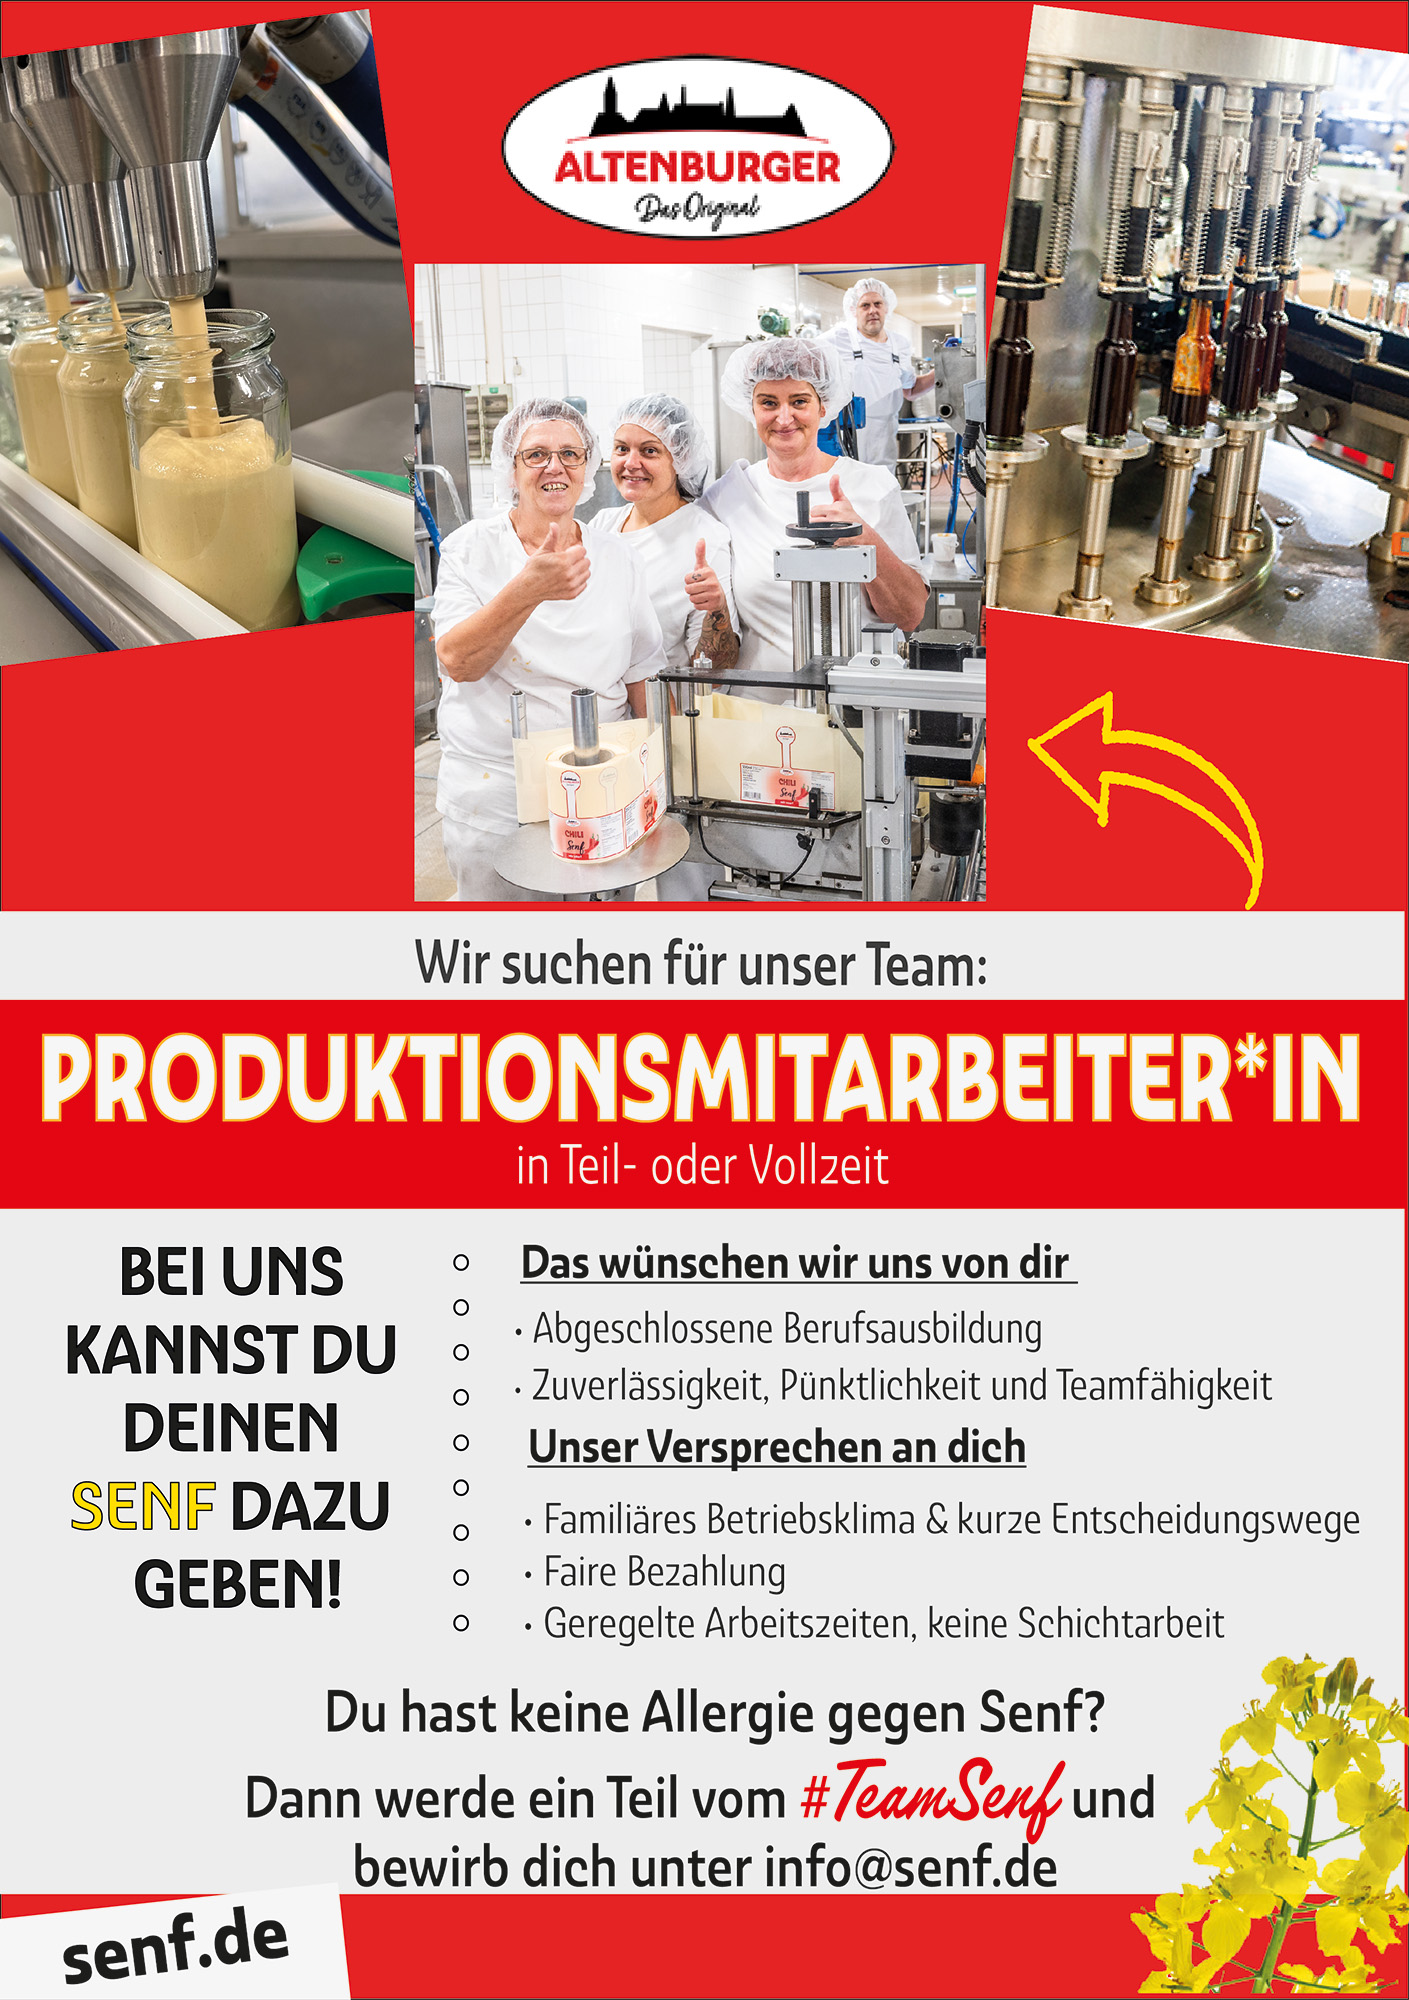 wir-suchen-produktionsmitarbeiter-innen-senf-de